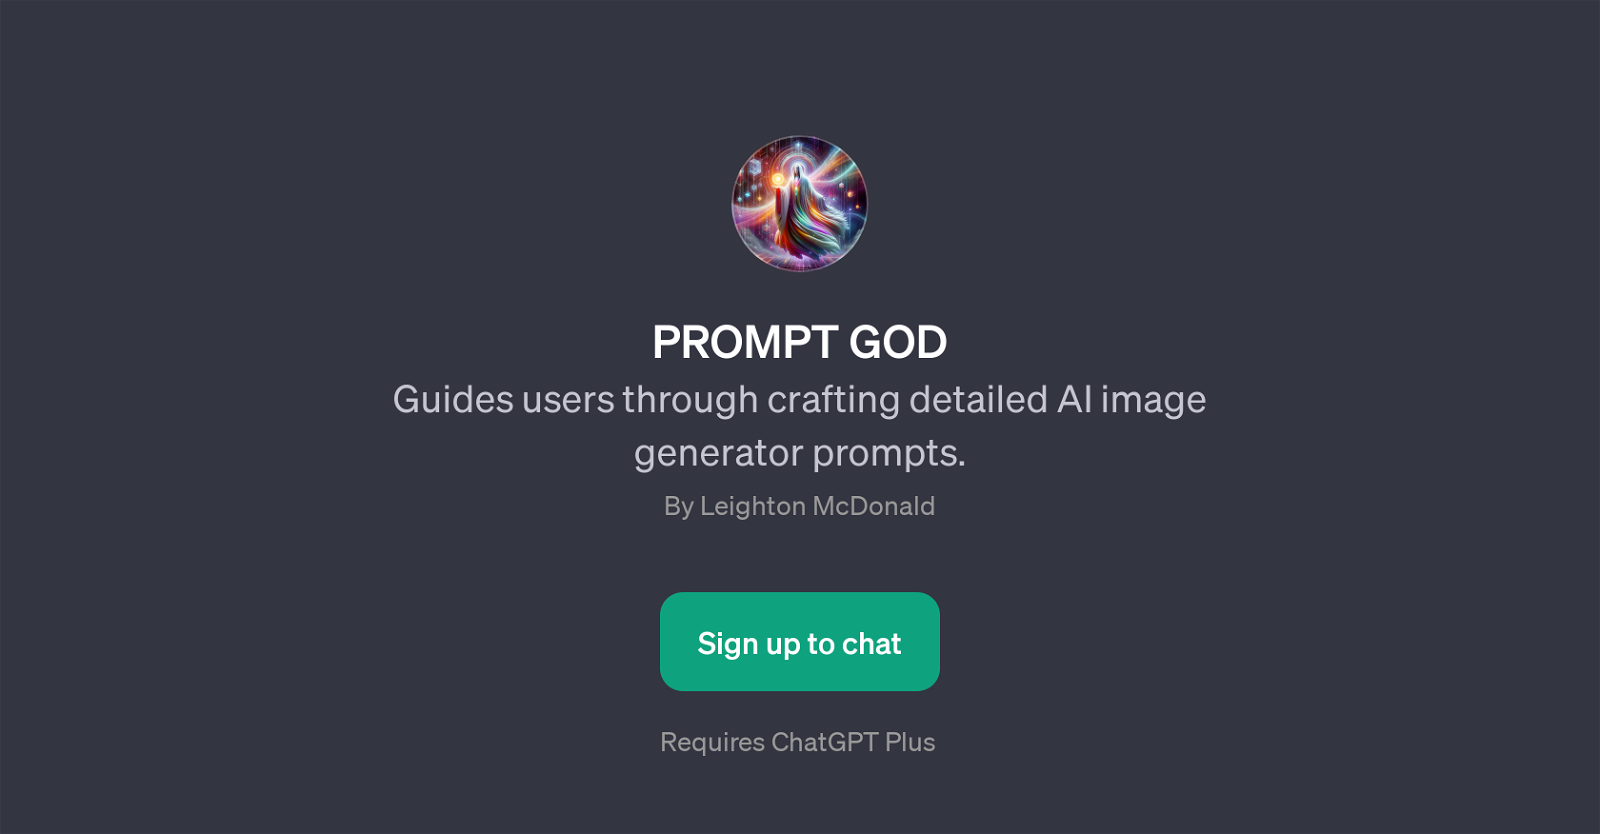 PROMPT GOD website